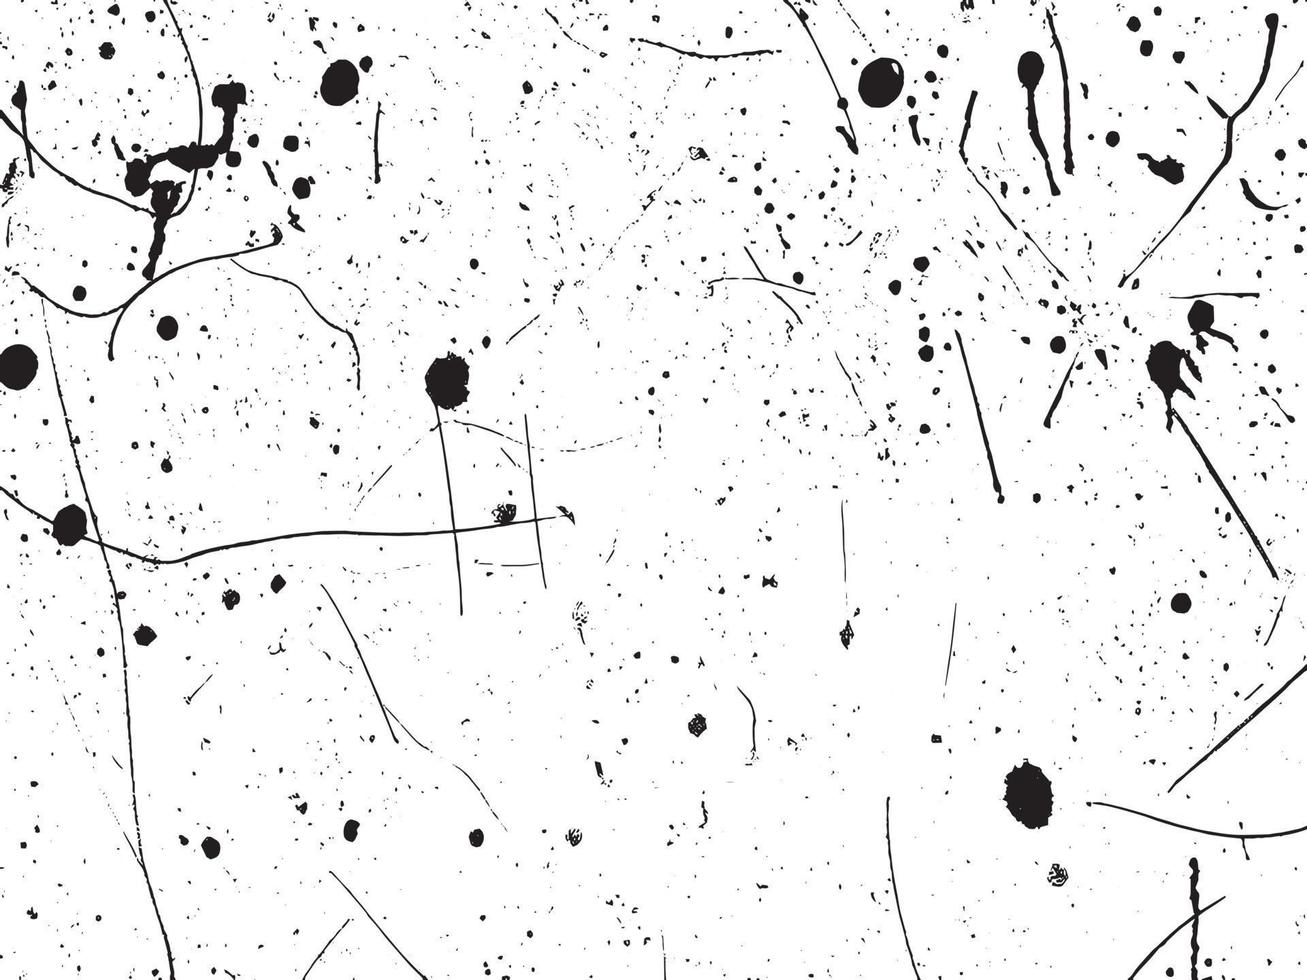 Clásico grunge hormigón pared textura con afligido elementos de tiza, manchas, arañazos, y ruido en negro y blanco. vector eps 10